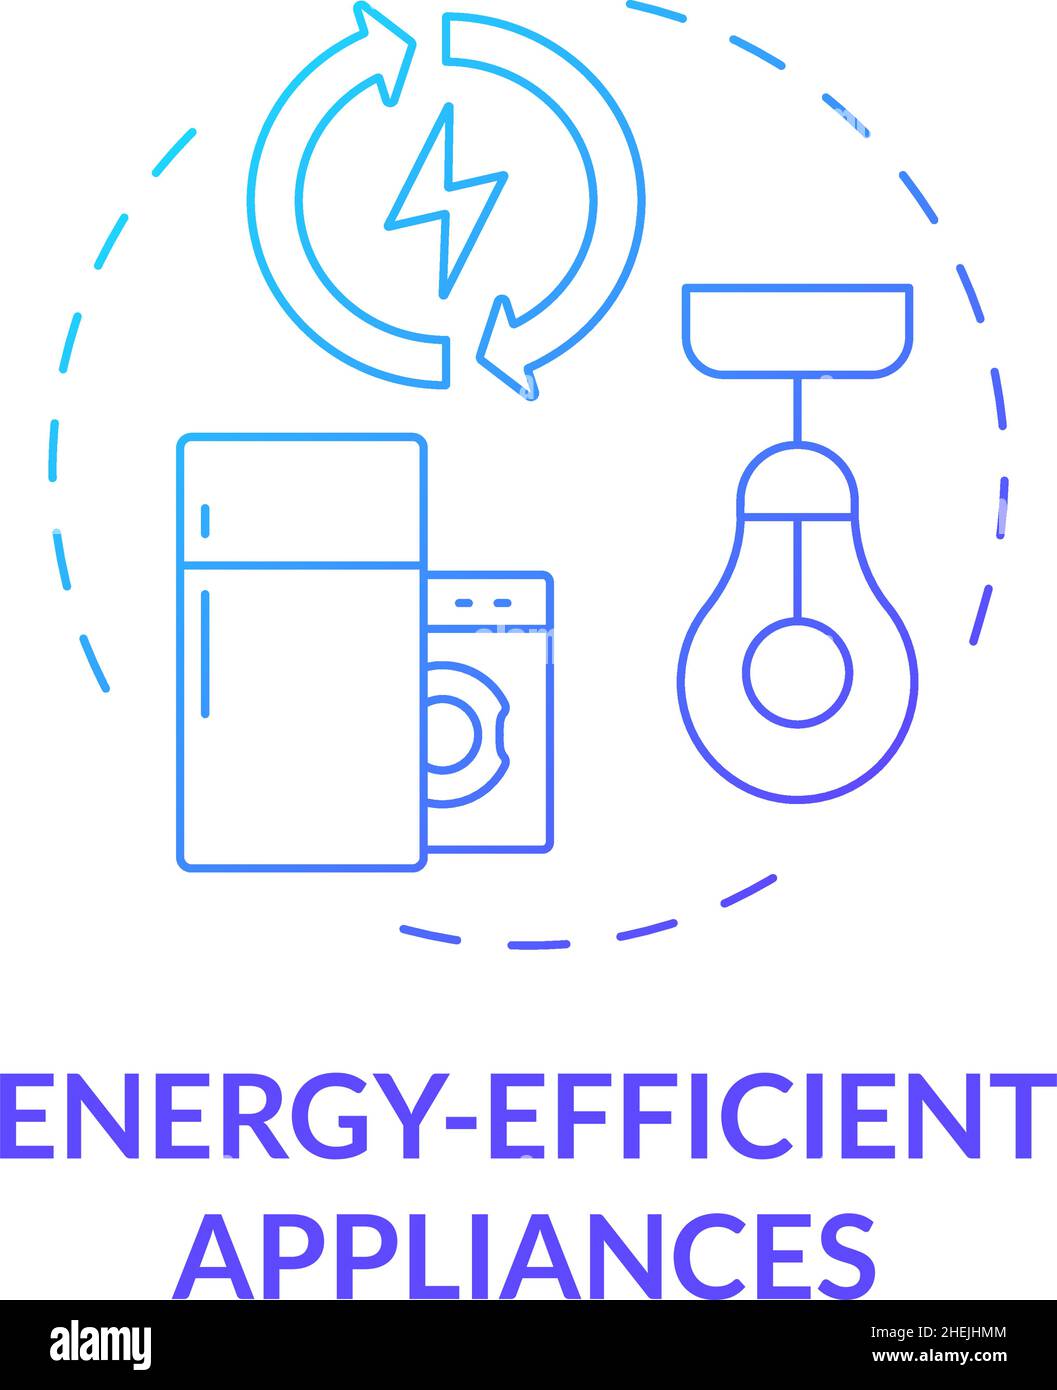 Energy efficient appliances blue gradient concept icon Stock Vector